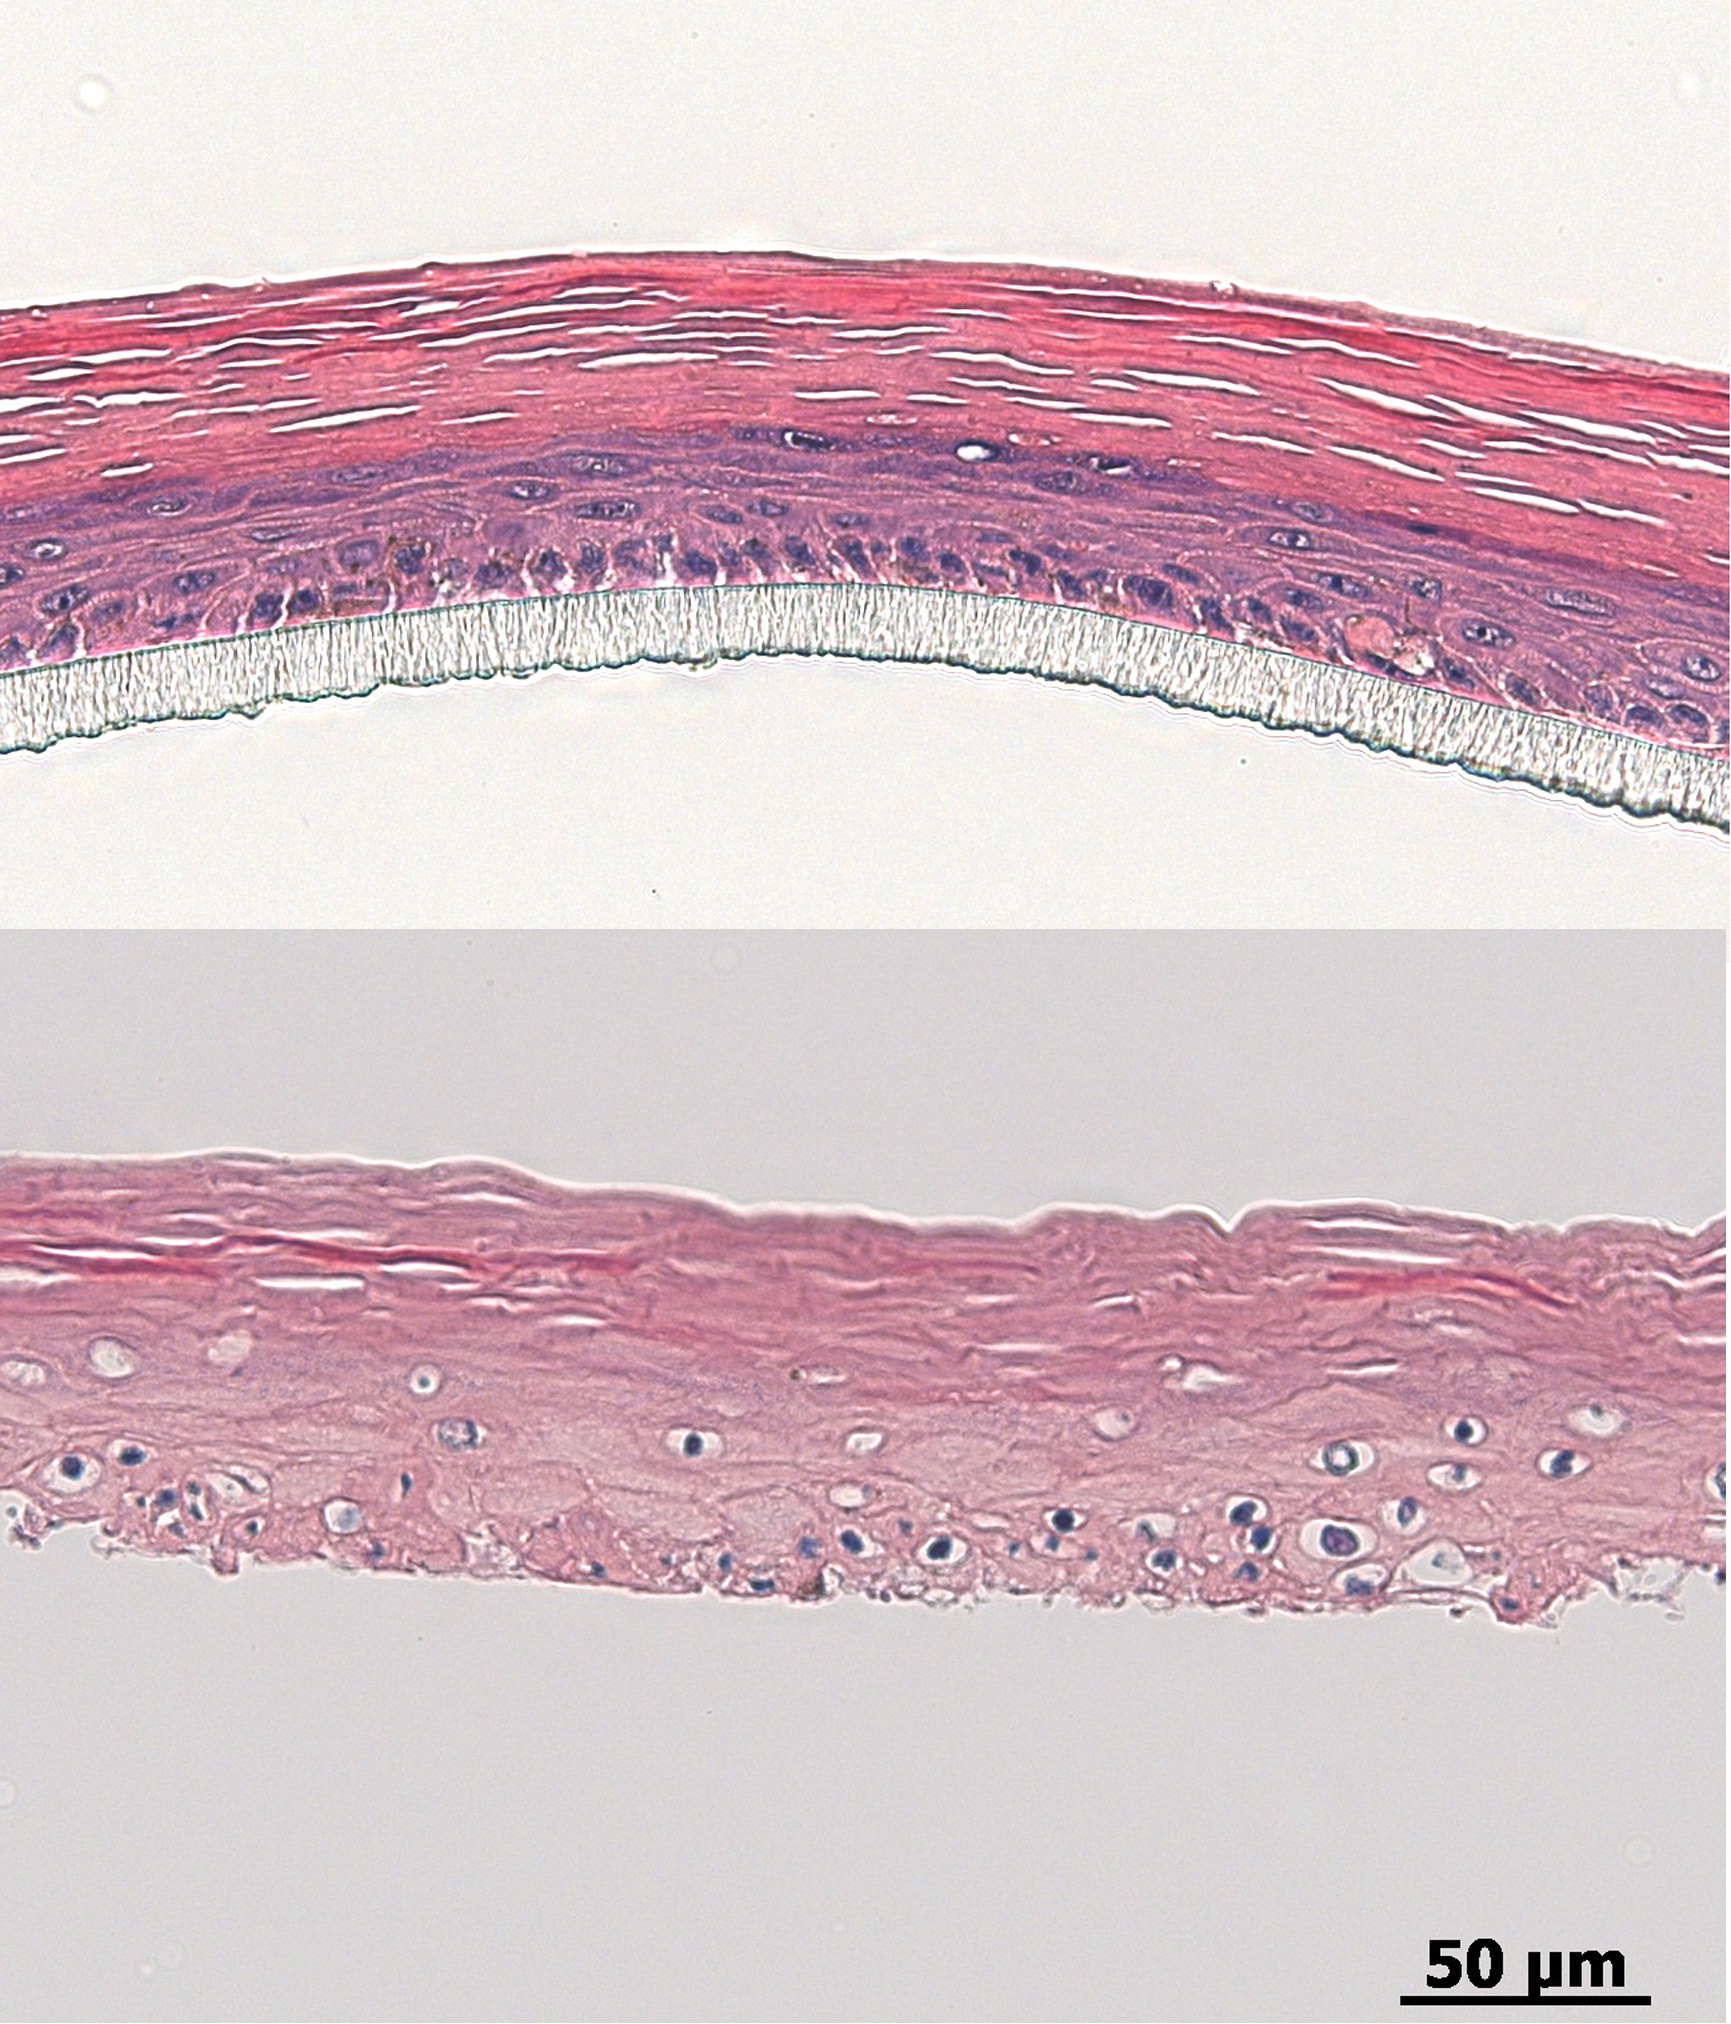 Es ist jeweils ein histologischer Querschnitt durch die Epidermis vor(oben) und nach der Bestrahlung (unten) zu sehen. Auf dem unteren Schnitterscheint die Epidermis aufgrund der Zellschädigung ausgefranst undlöchrig.